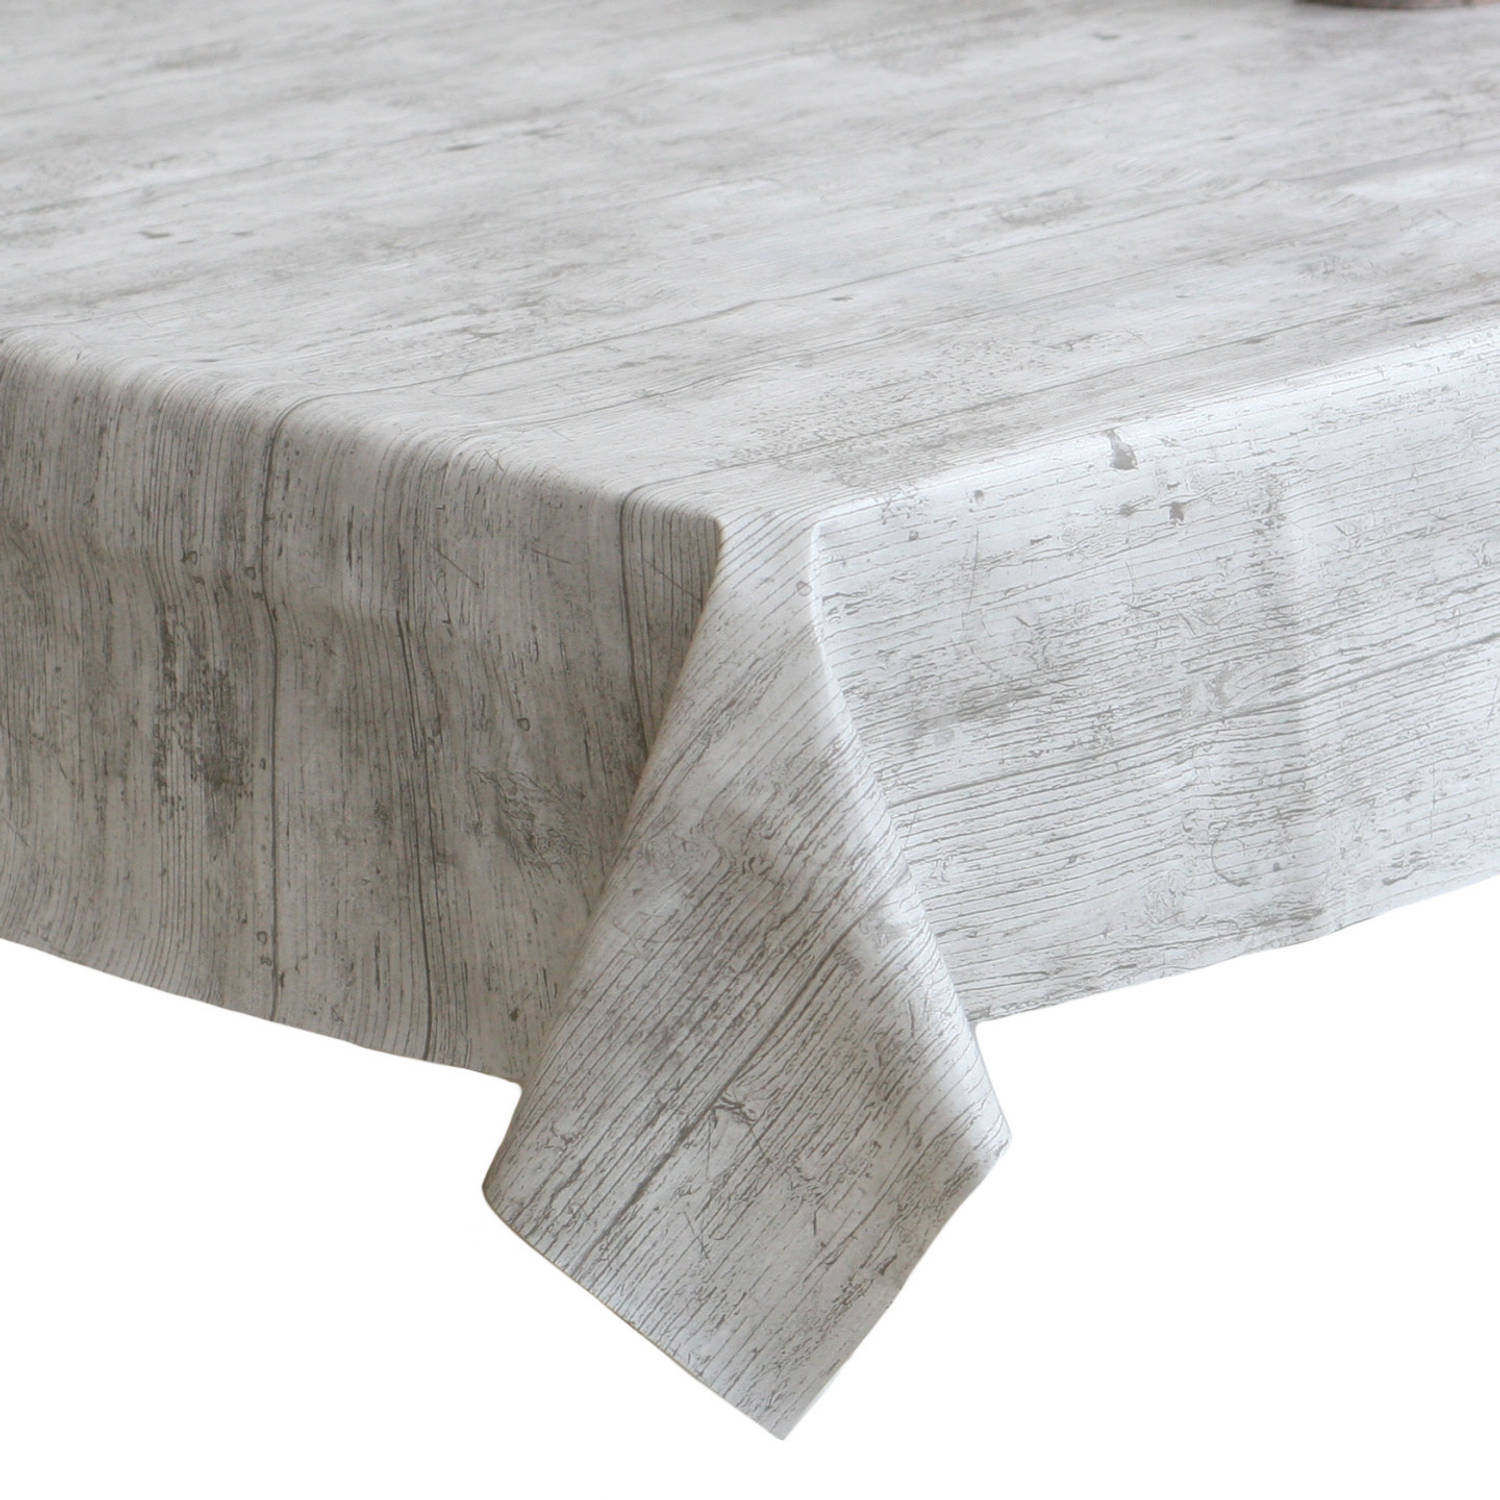 Gevaar Afslachten Burgerschap Tafelzeil/tafelkleed white wash/grijs houten planken 140 x 180 cm -  Tafelzeilen | Blokker